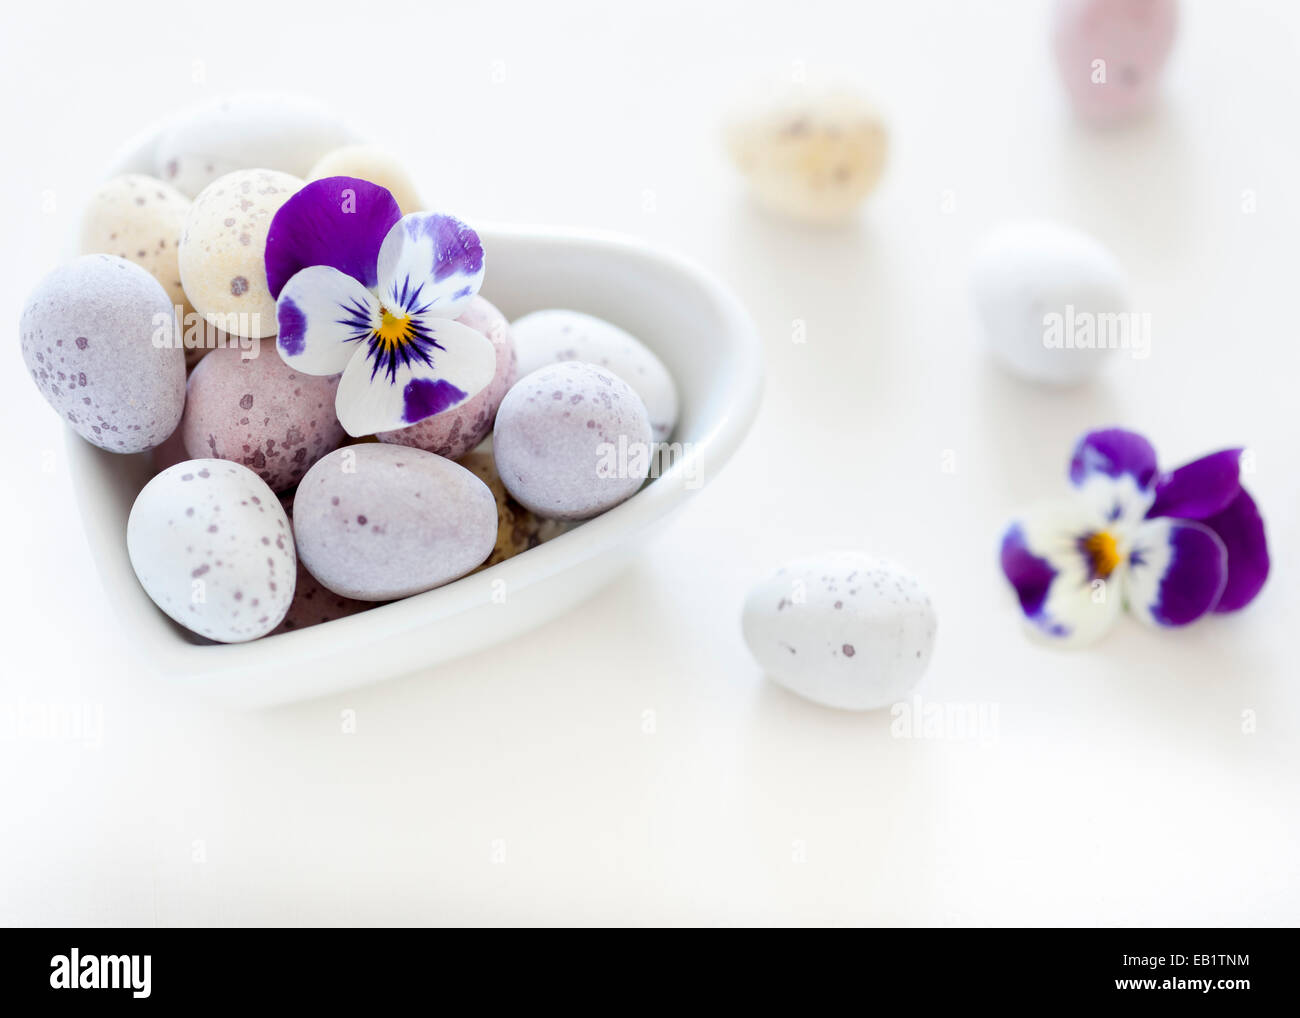 Colores pastel mini los huevos en un recipiente con forma de corazón blanco viola pansy sobre un telón de fondo borroso blanco Foto de stock